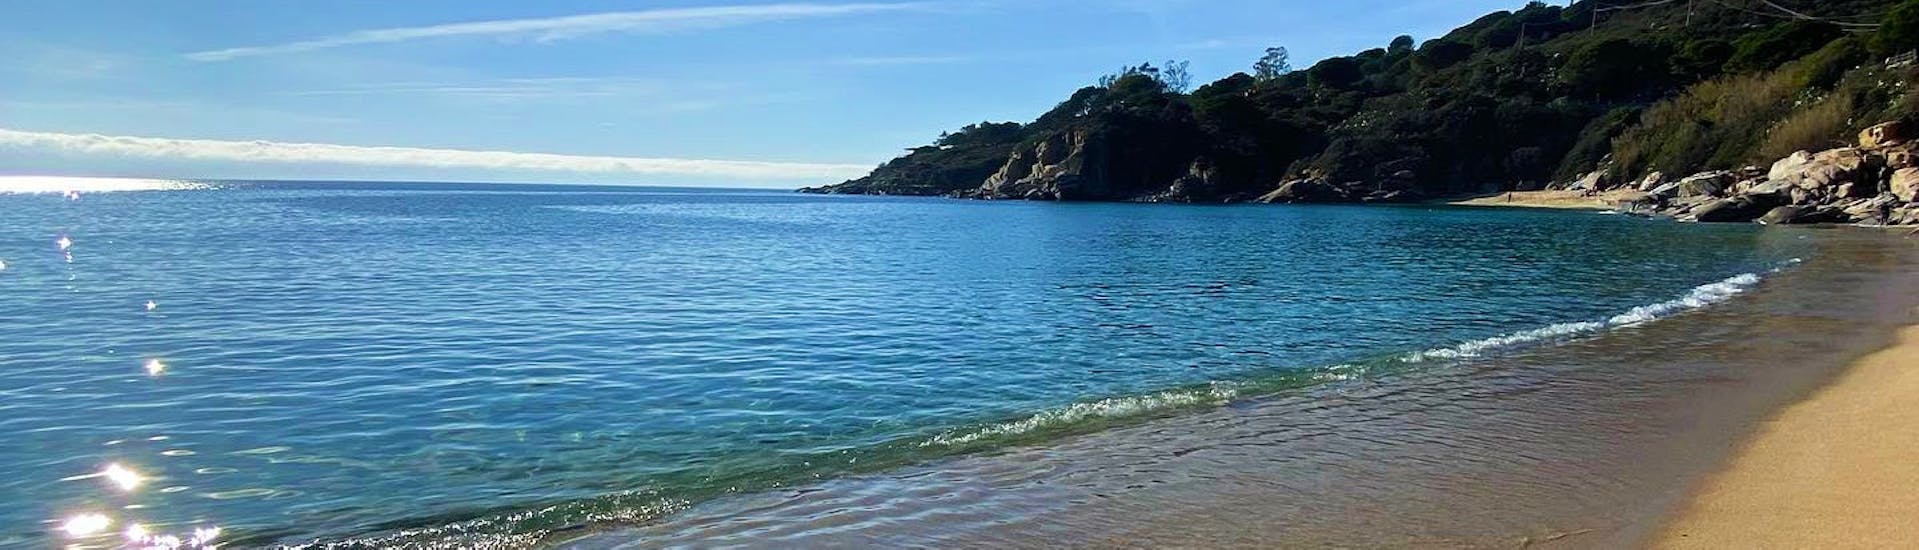 Foto de una playa en la isla de Elba realizada durante un viaje desde Marina di Campo a Pomontone con avistamiento de delfines con Baby Princess Elba.